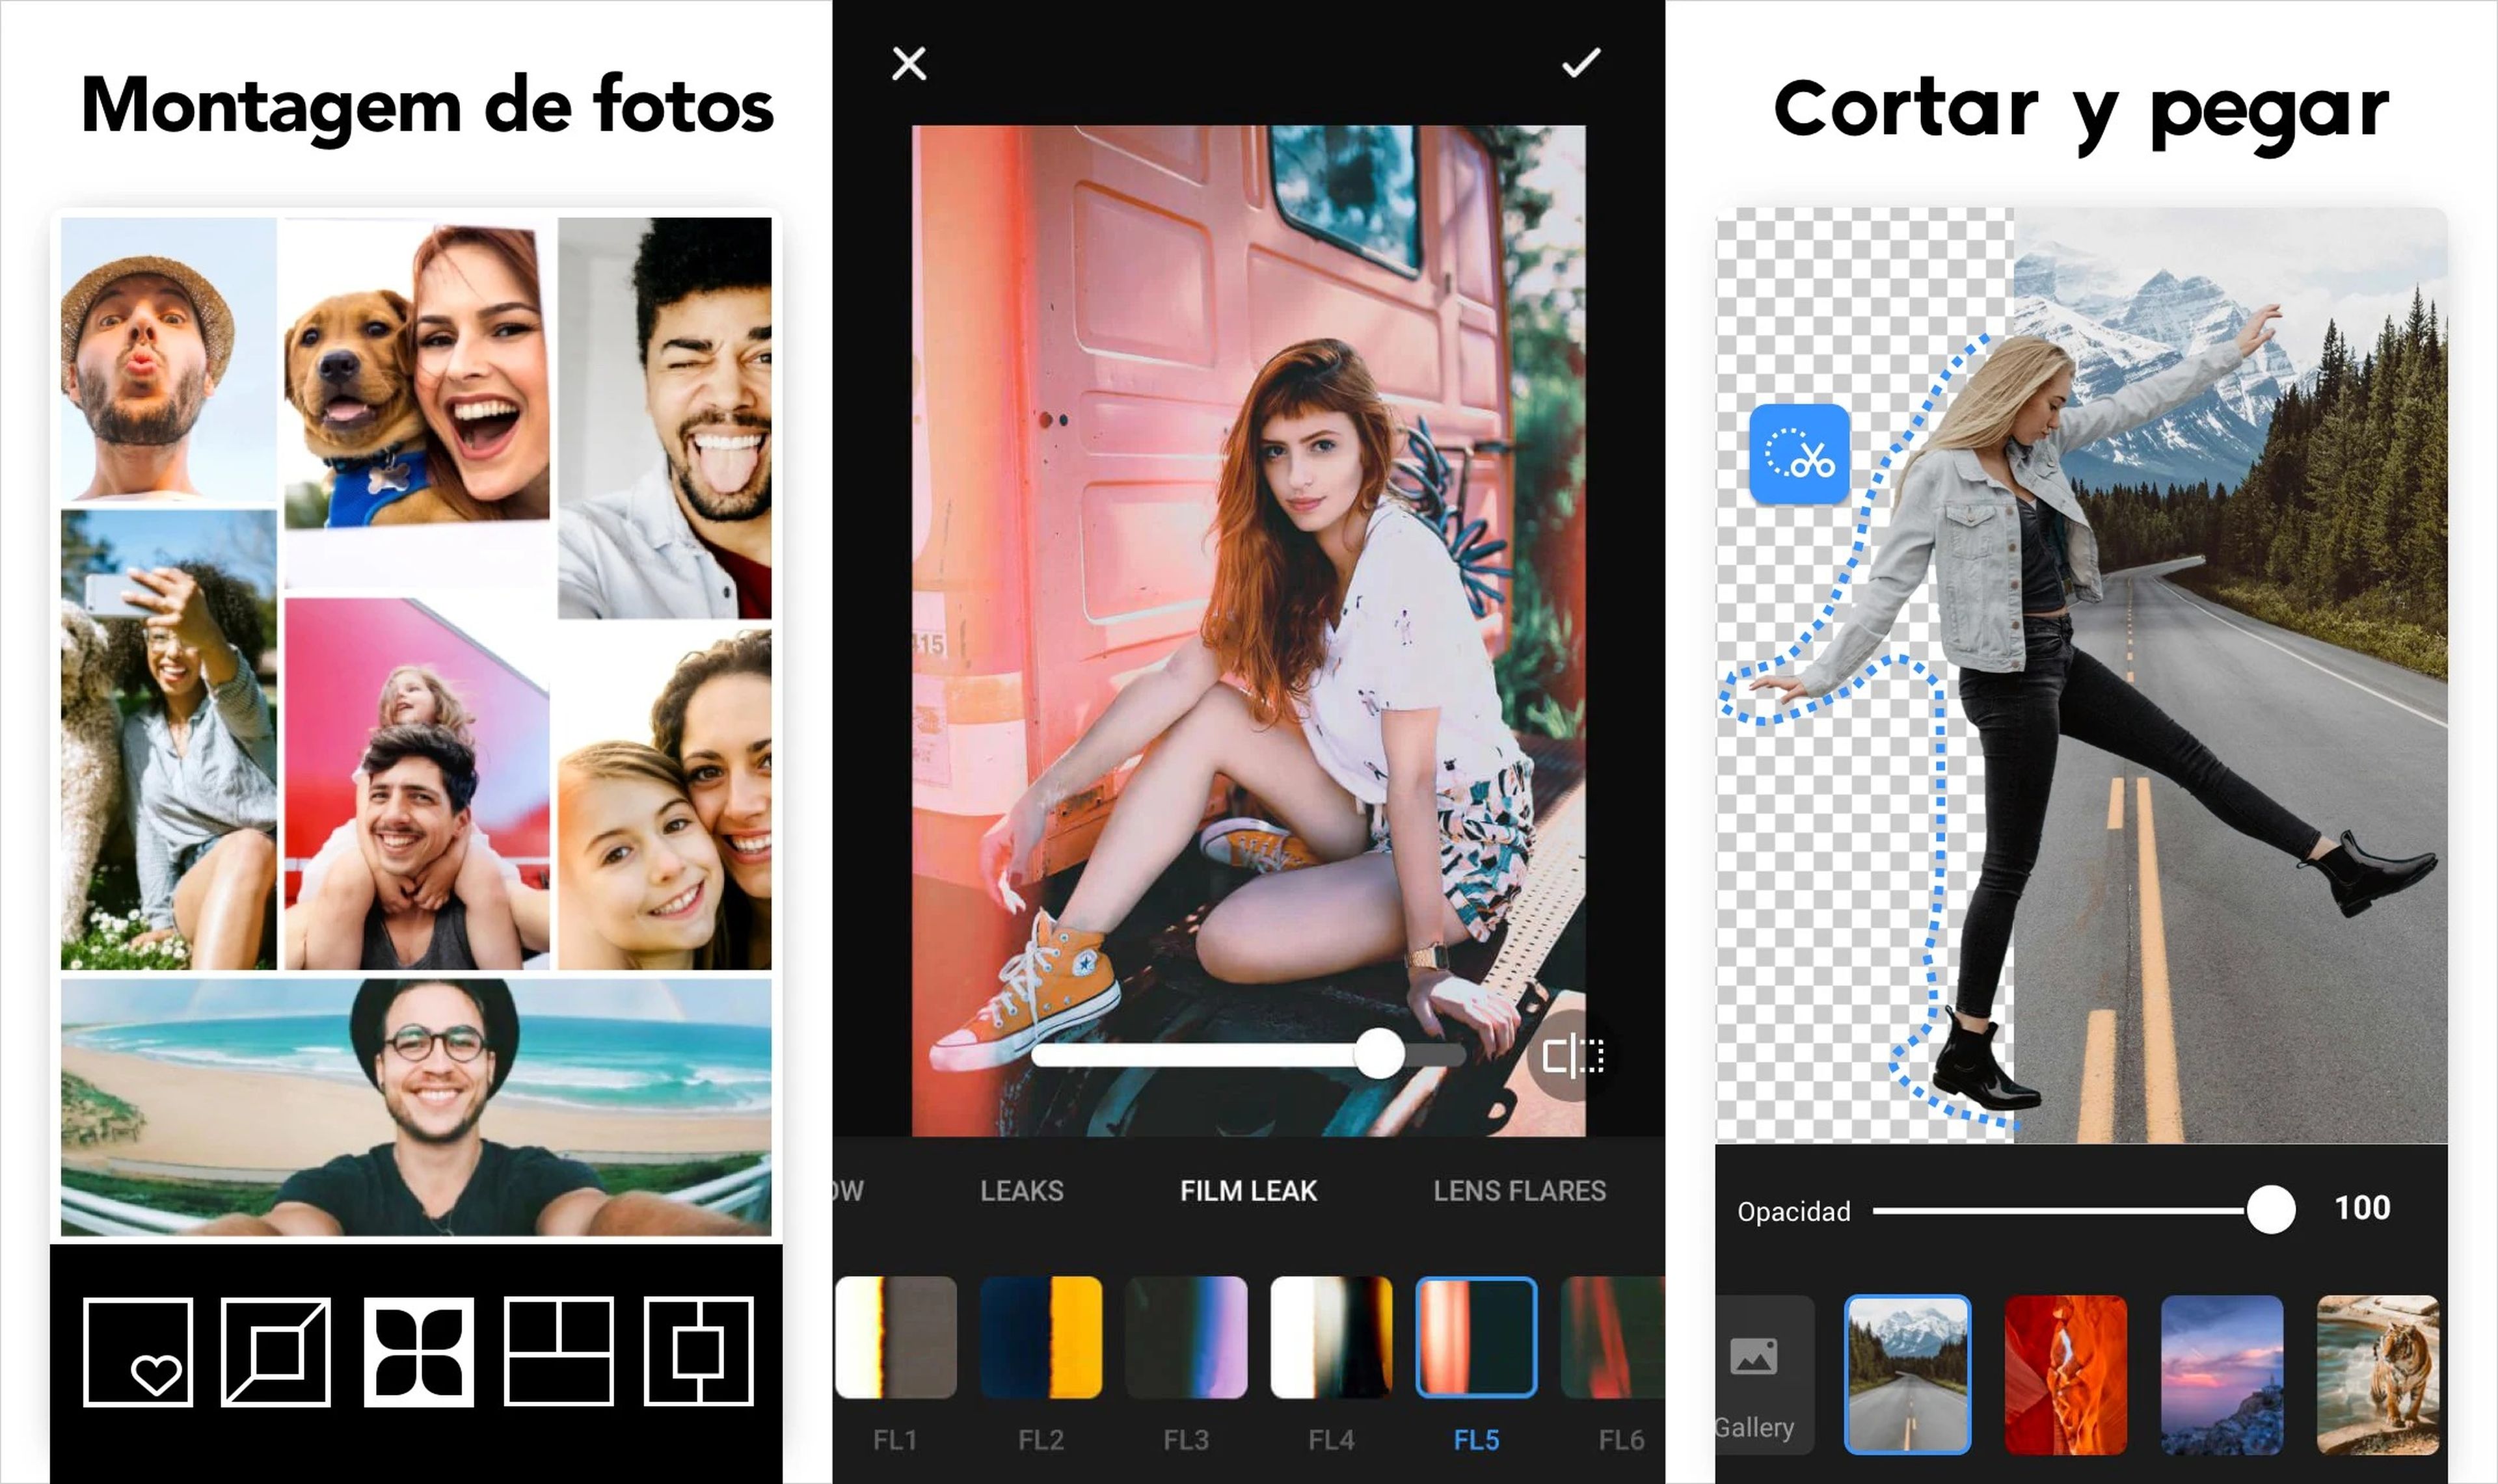 Las 7 mejores aplicaciones para editar fotografías en móviles Android